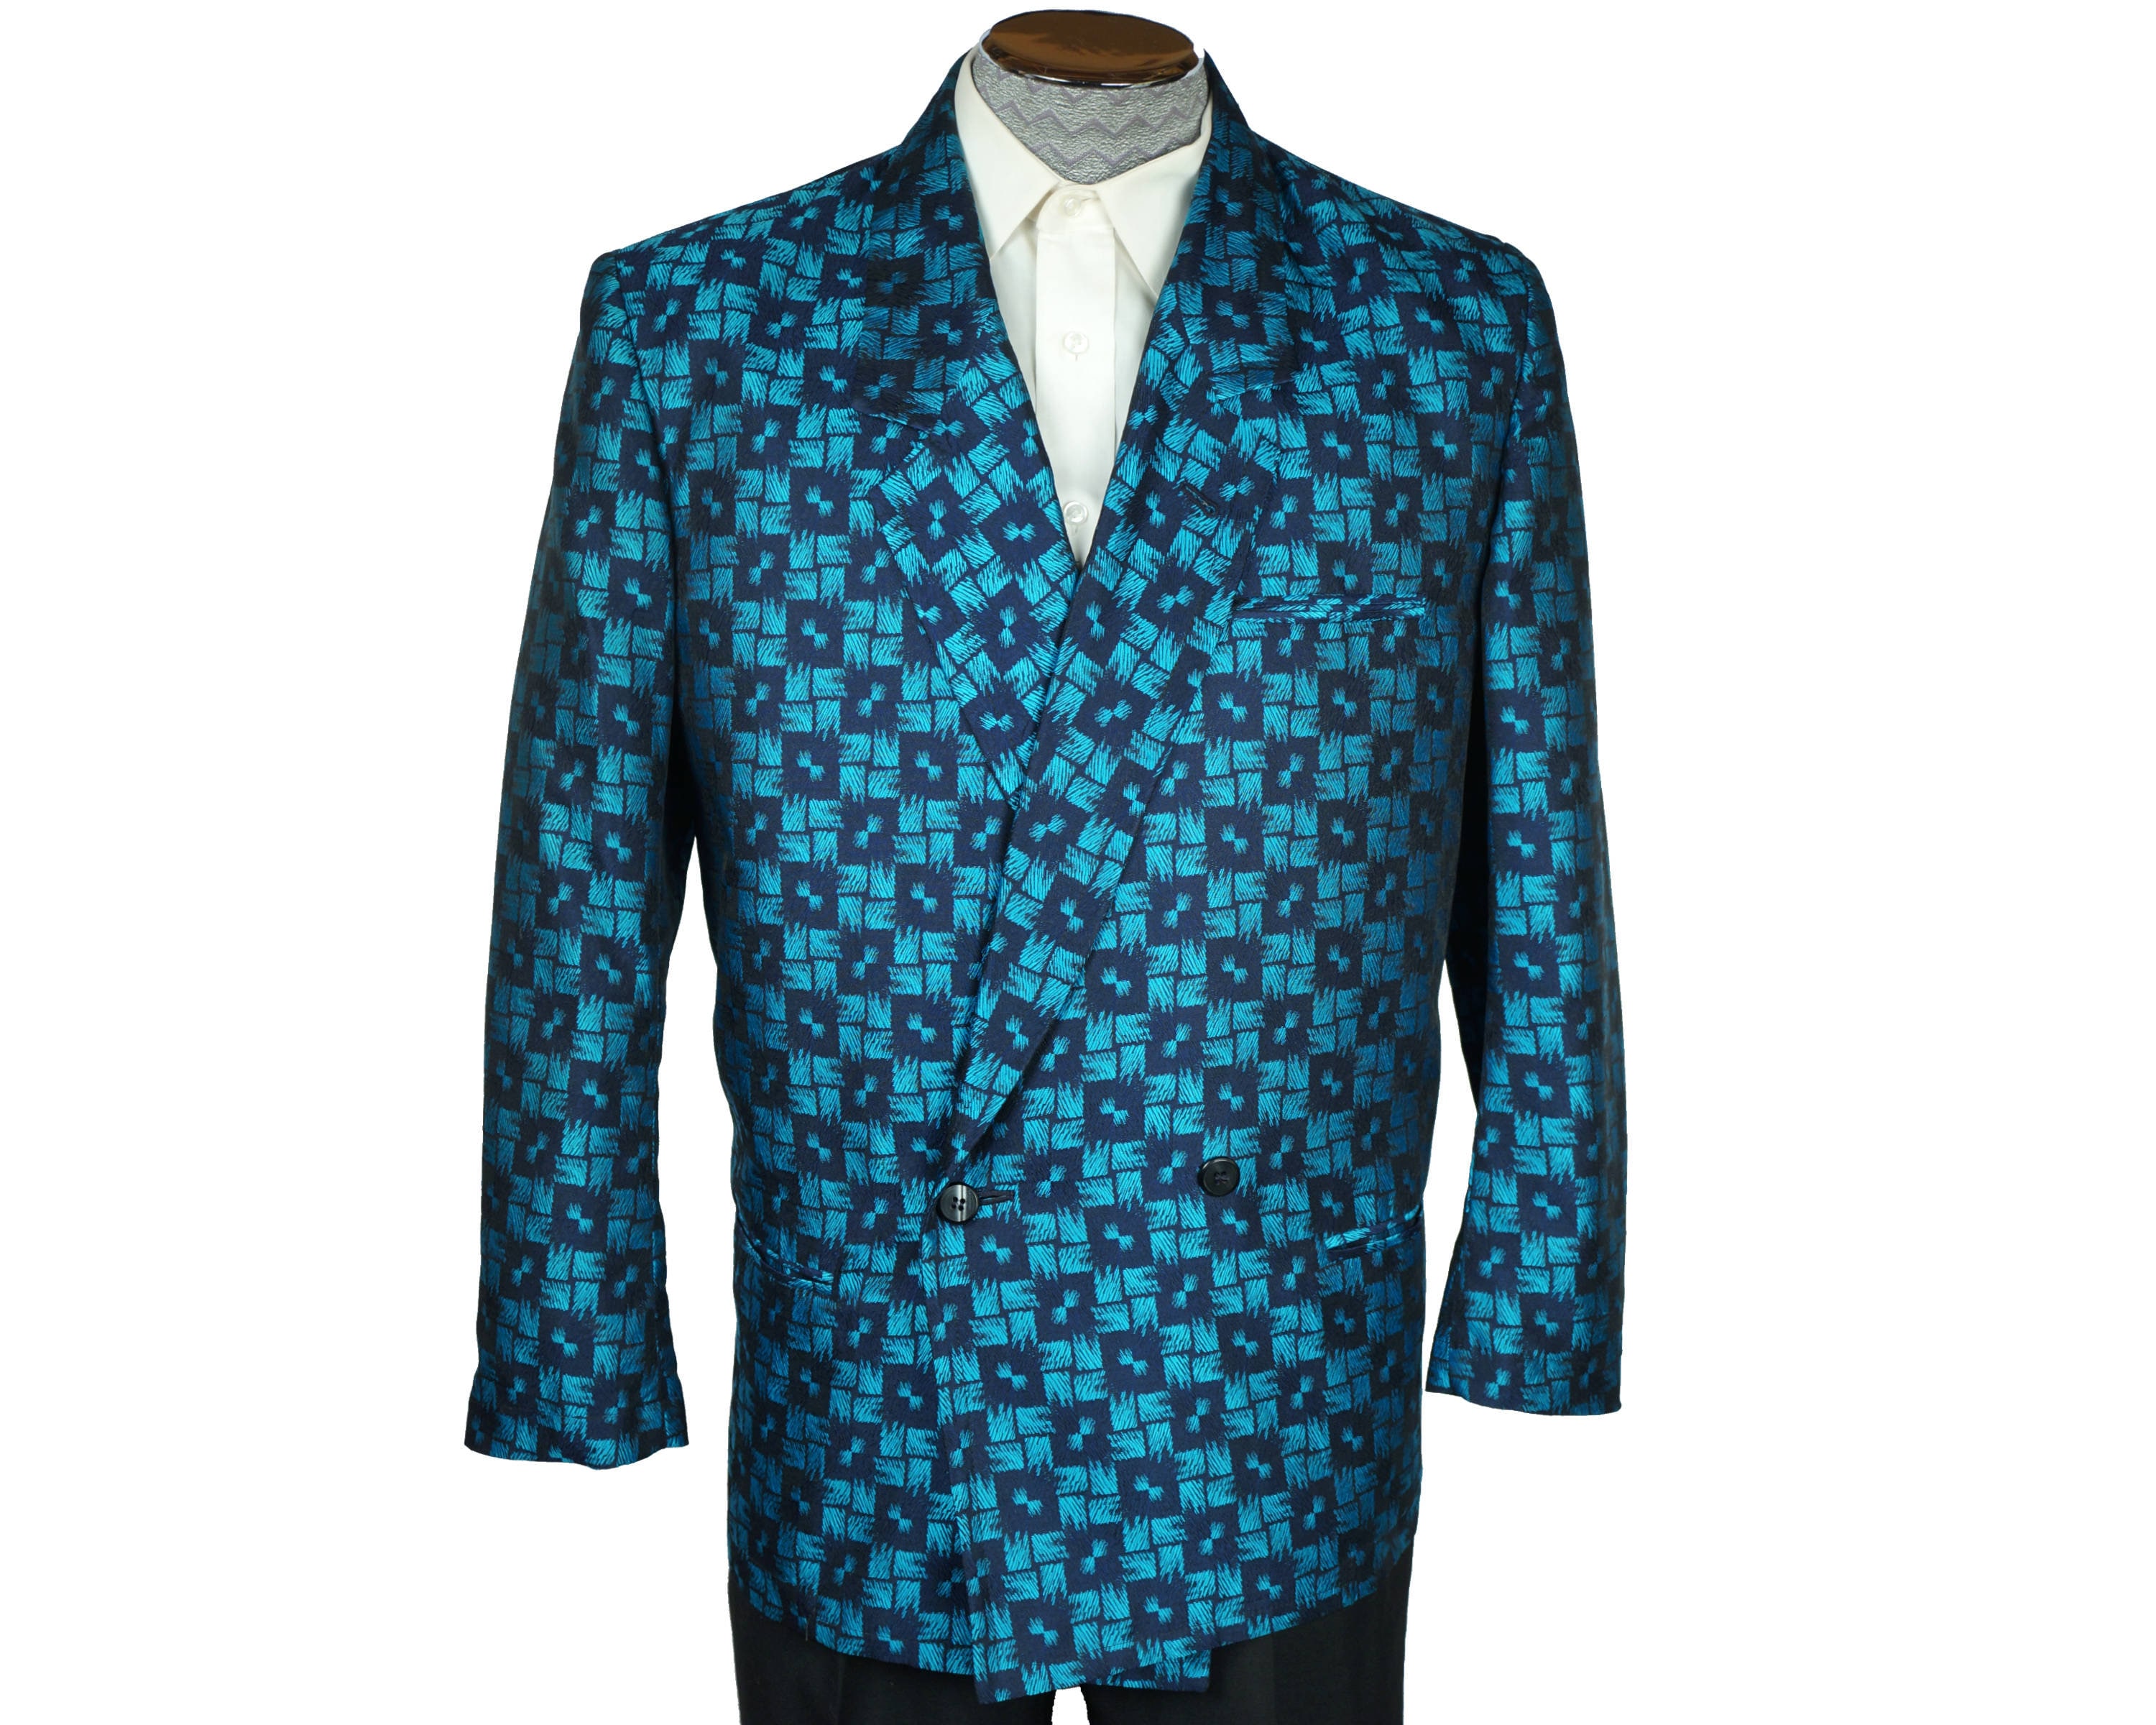 Louis Vuitton Shiny Monogram Short Parka Turquoise. Size 38